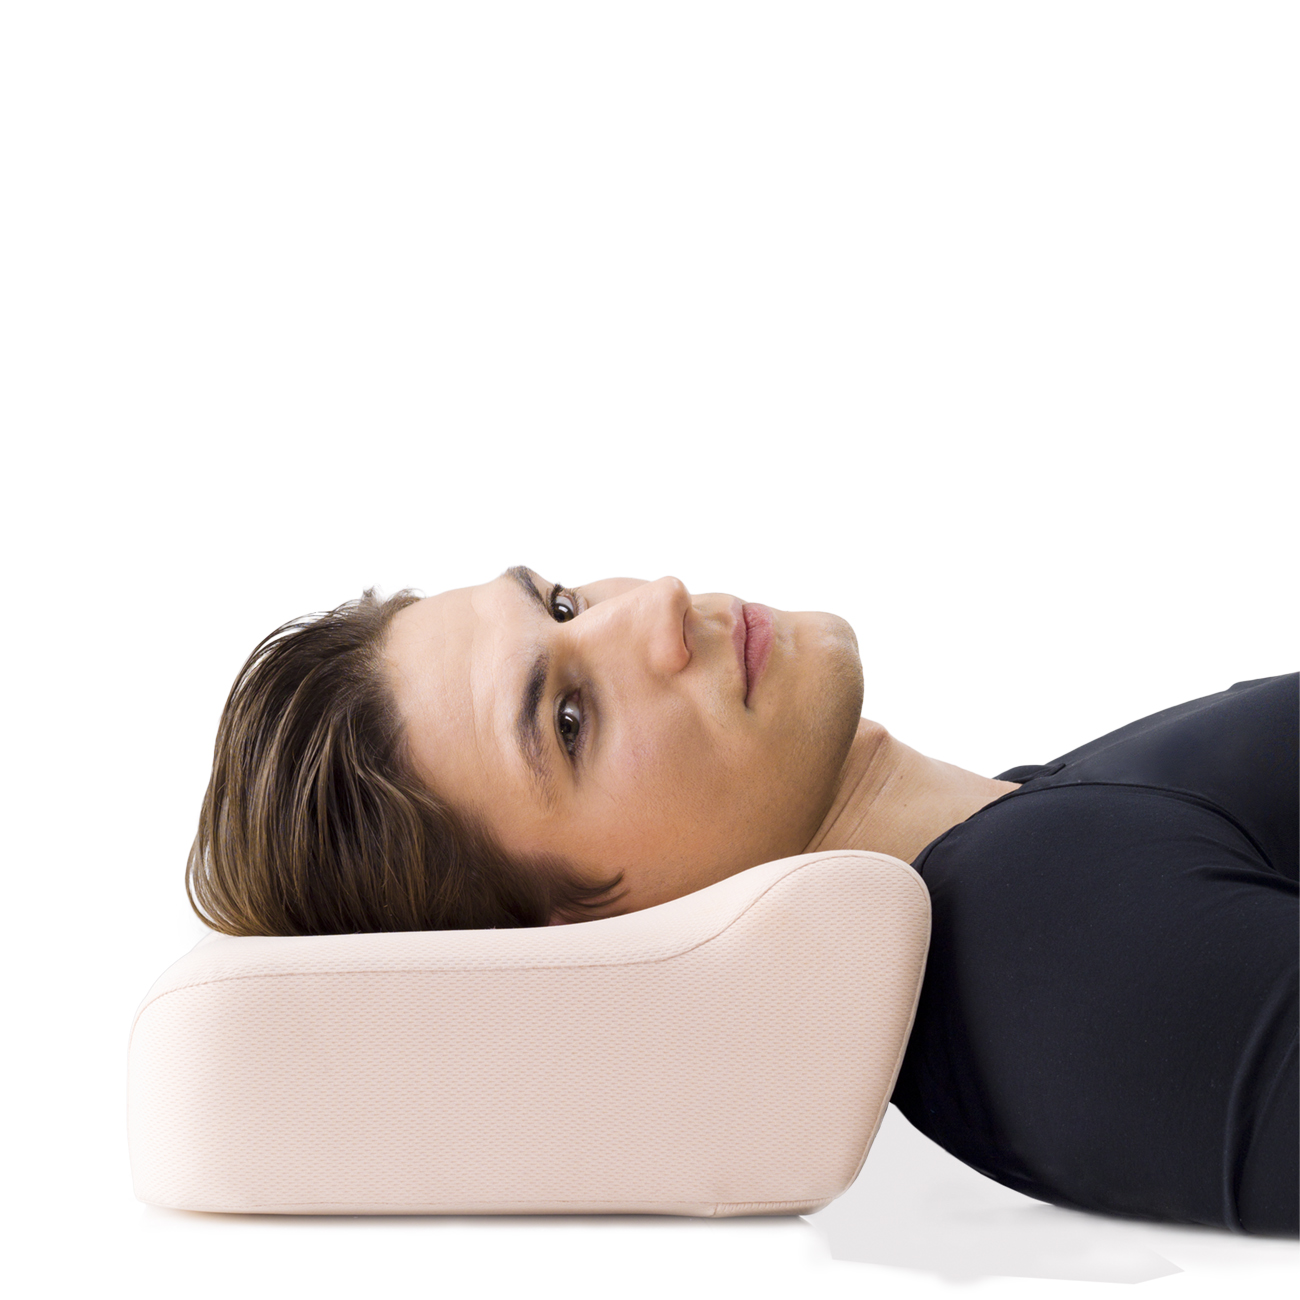 Ортопедическая подушка для сна купить в москве. Подушка ортопедическая Orto пс110. Ортопедическая подушка для сна детская Orto ПС-110. Ортопедическая подушка Ecoten. Подушка для мужчины для сна.